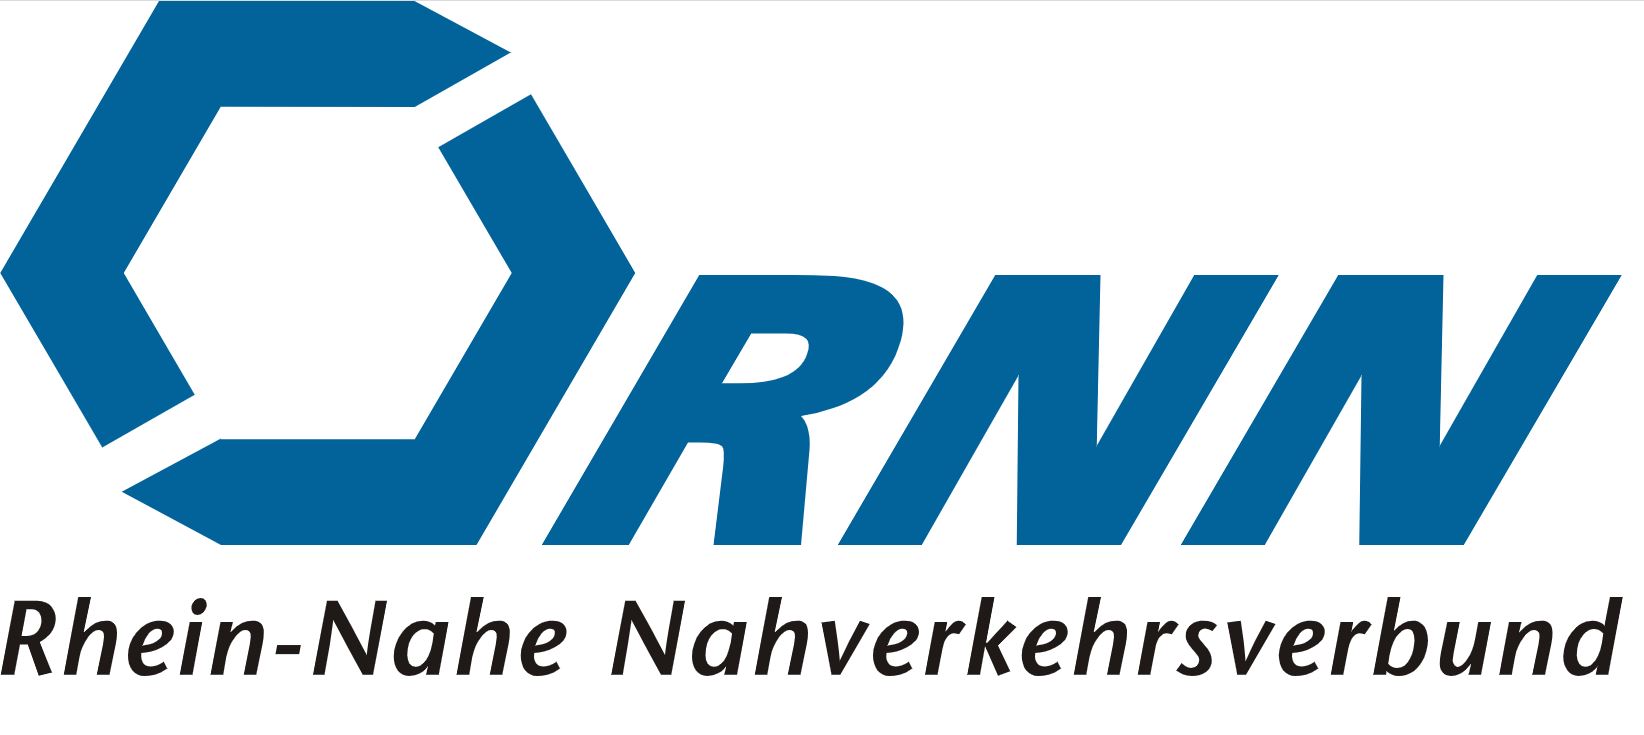 RNN-Logo (c) RNN - Rhein-Nahe Nahverkehrsverbund